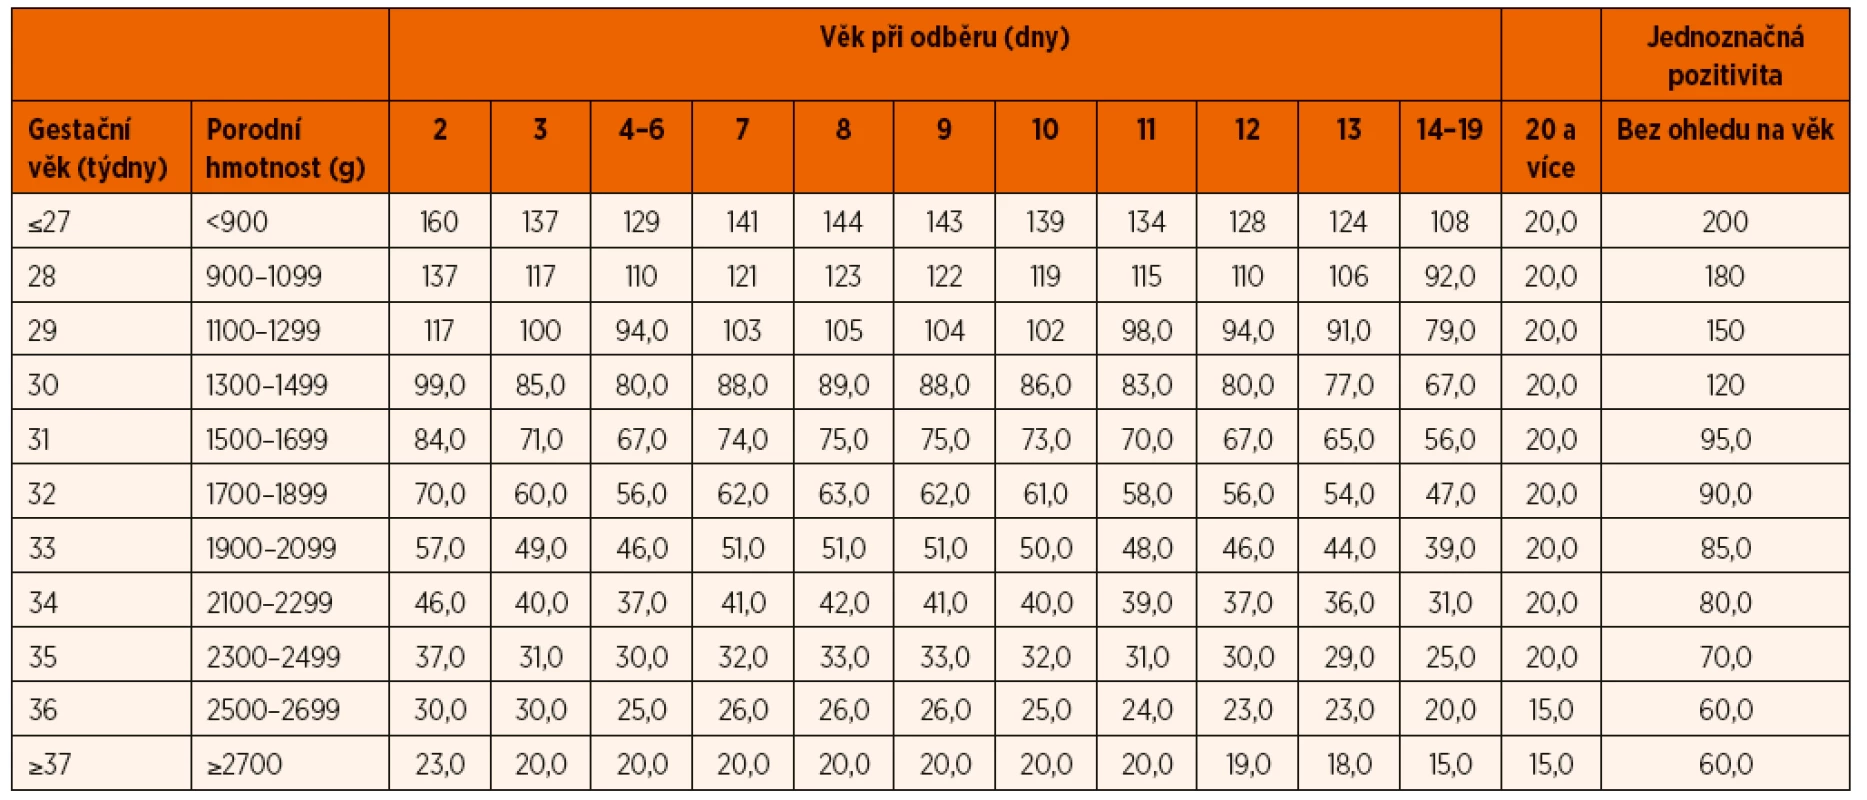 Použité screeningové hodnoty 17-hydroxyprogesteronu: „cut-off“ hodnoty (nmol/l) ve vztahu k porodní hmotnosti, délce gestace a věku
při odběru (upraveno dle [10]).